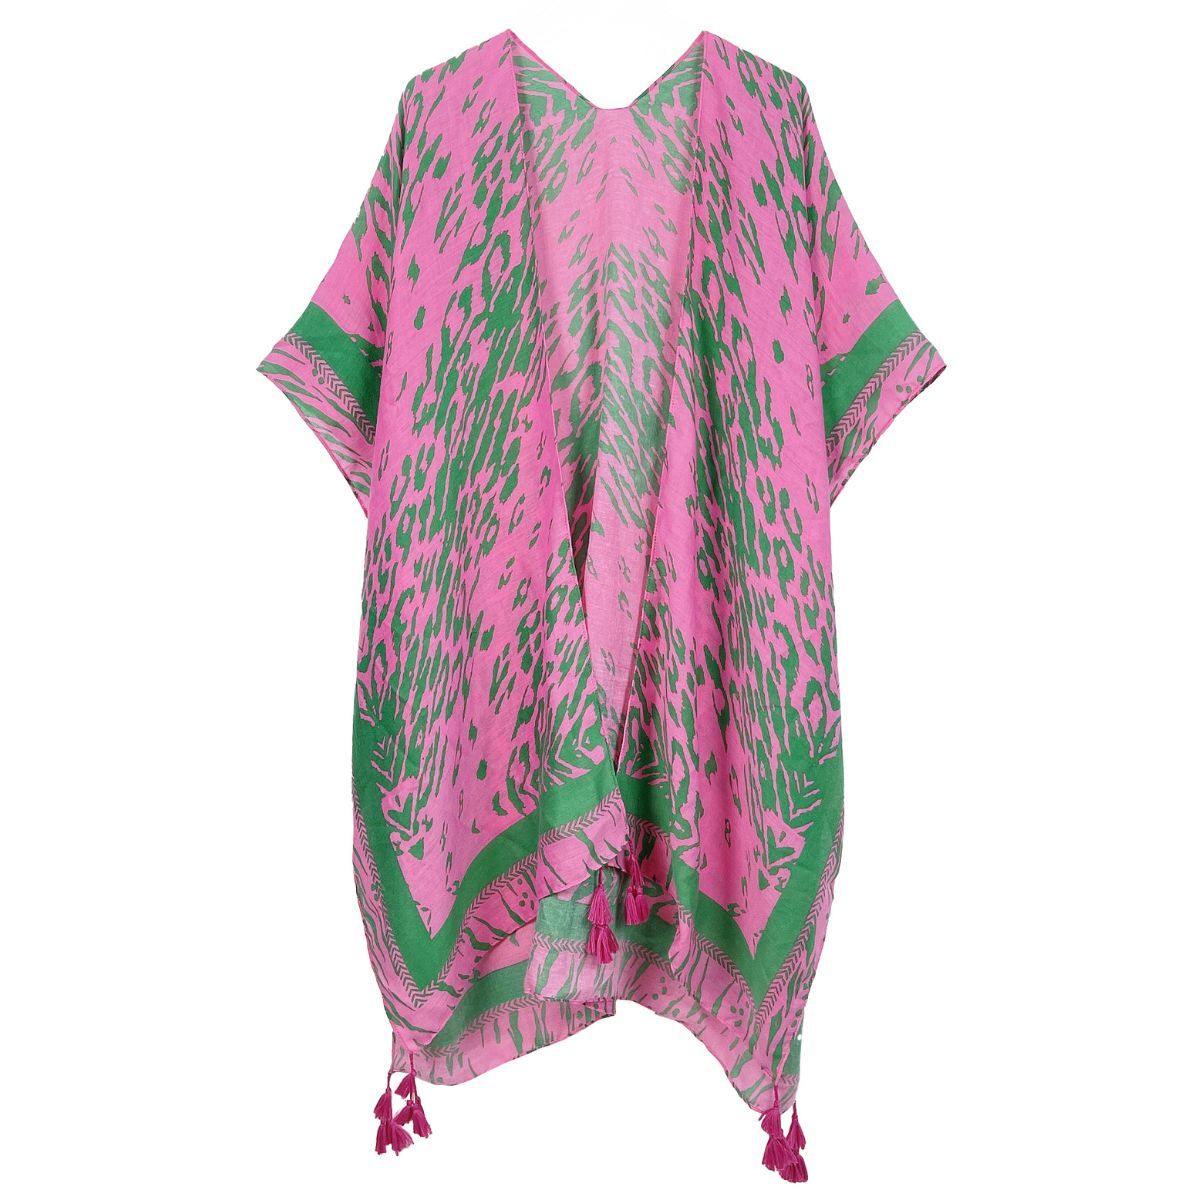 AKA Kimono Animal Print Pink and Green